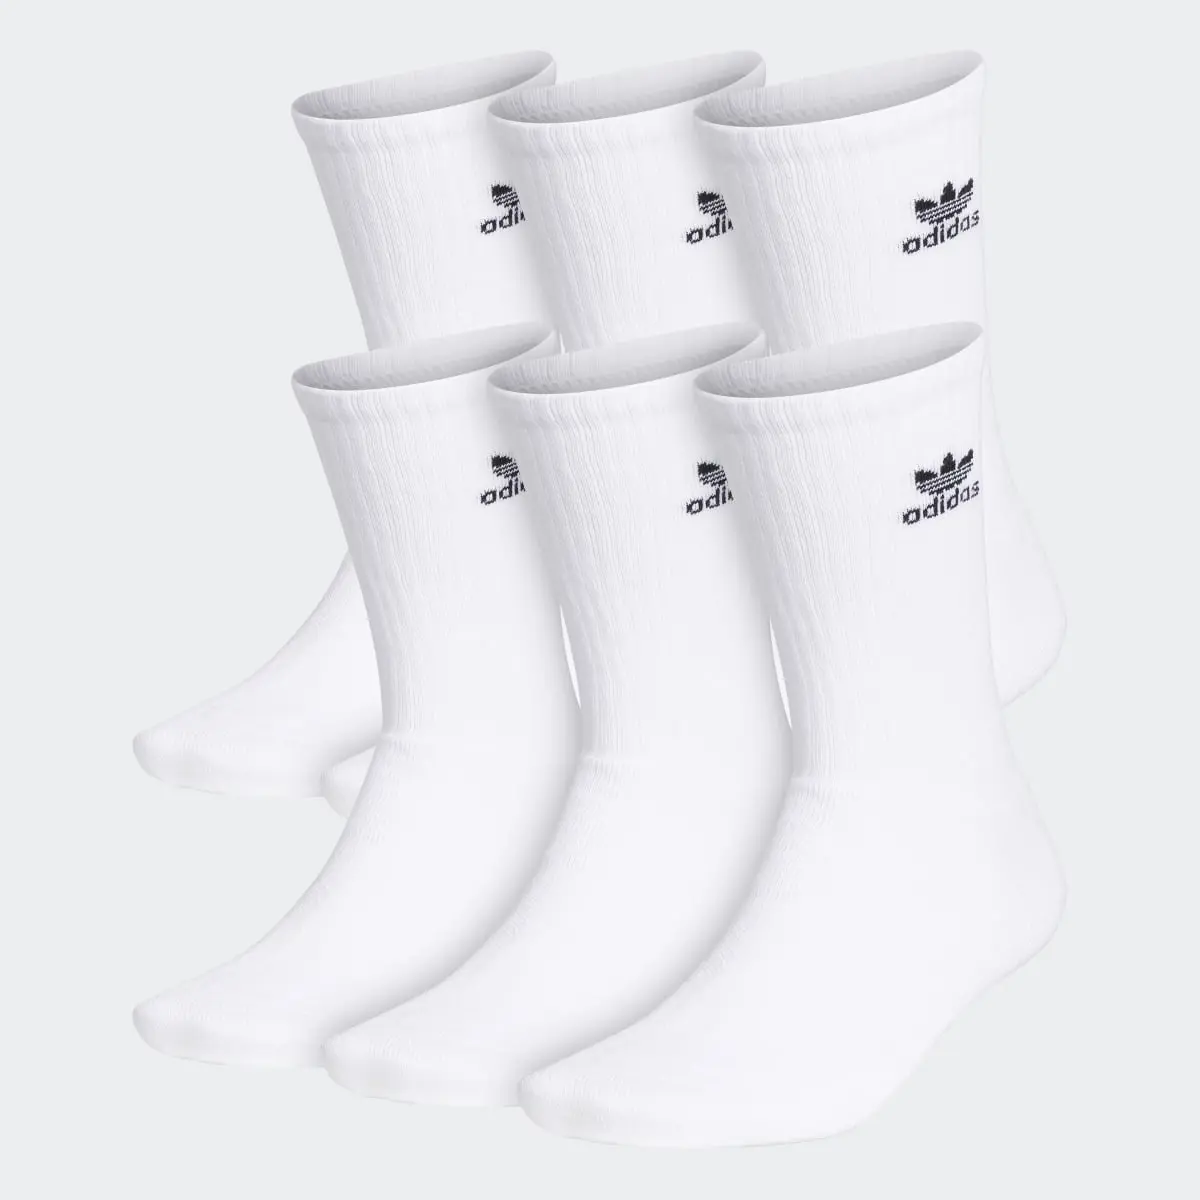 Adidas Trefoil Crew Socks 6 Pairs. 1